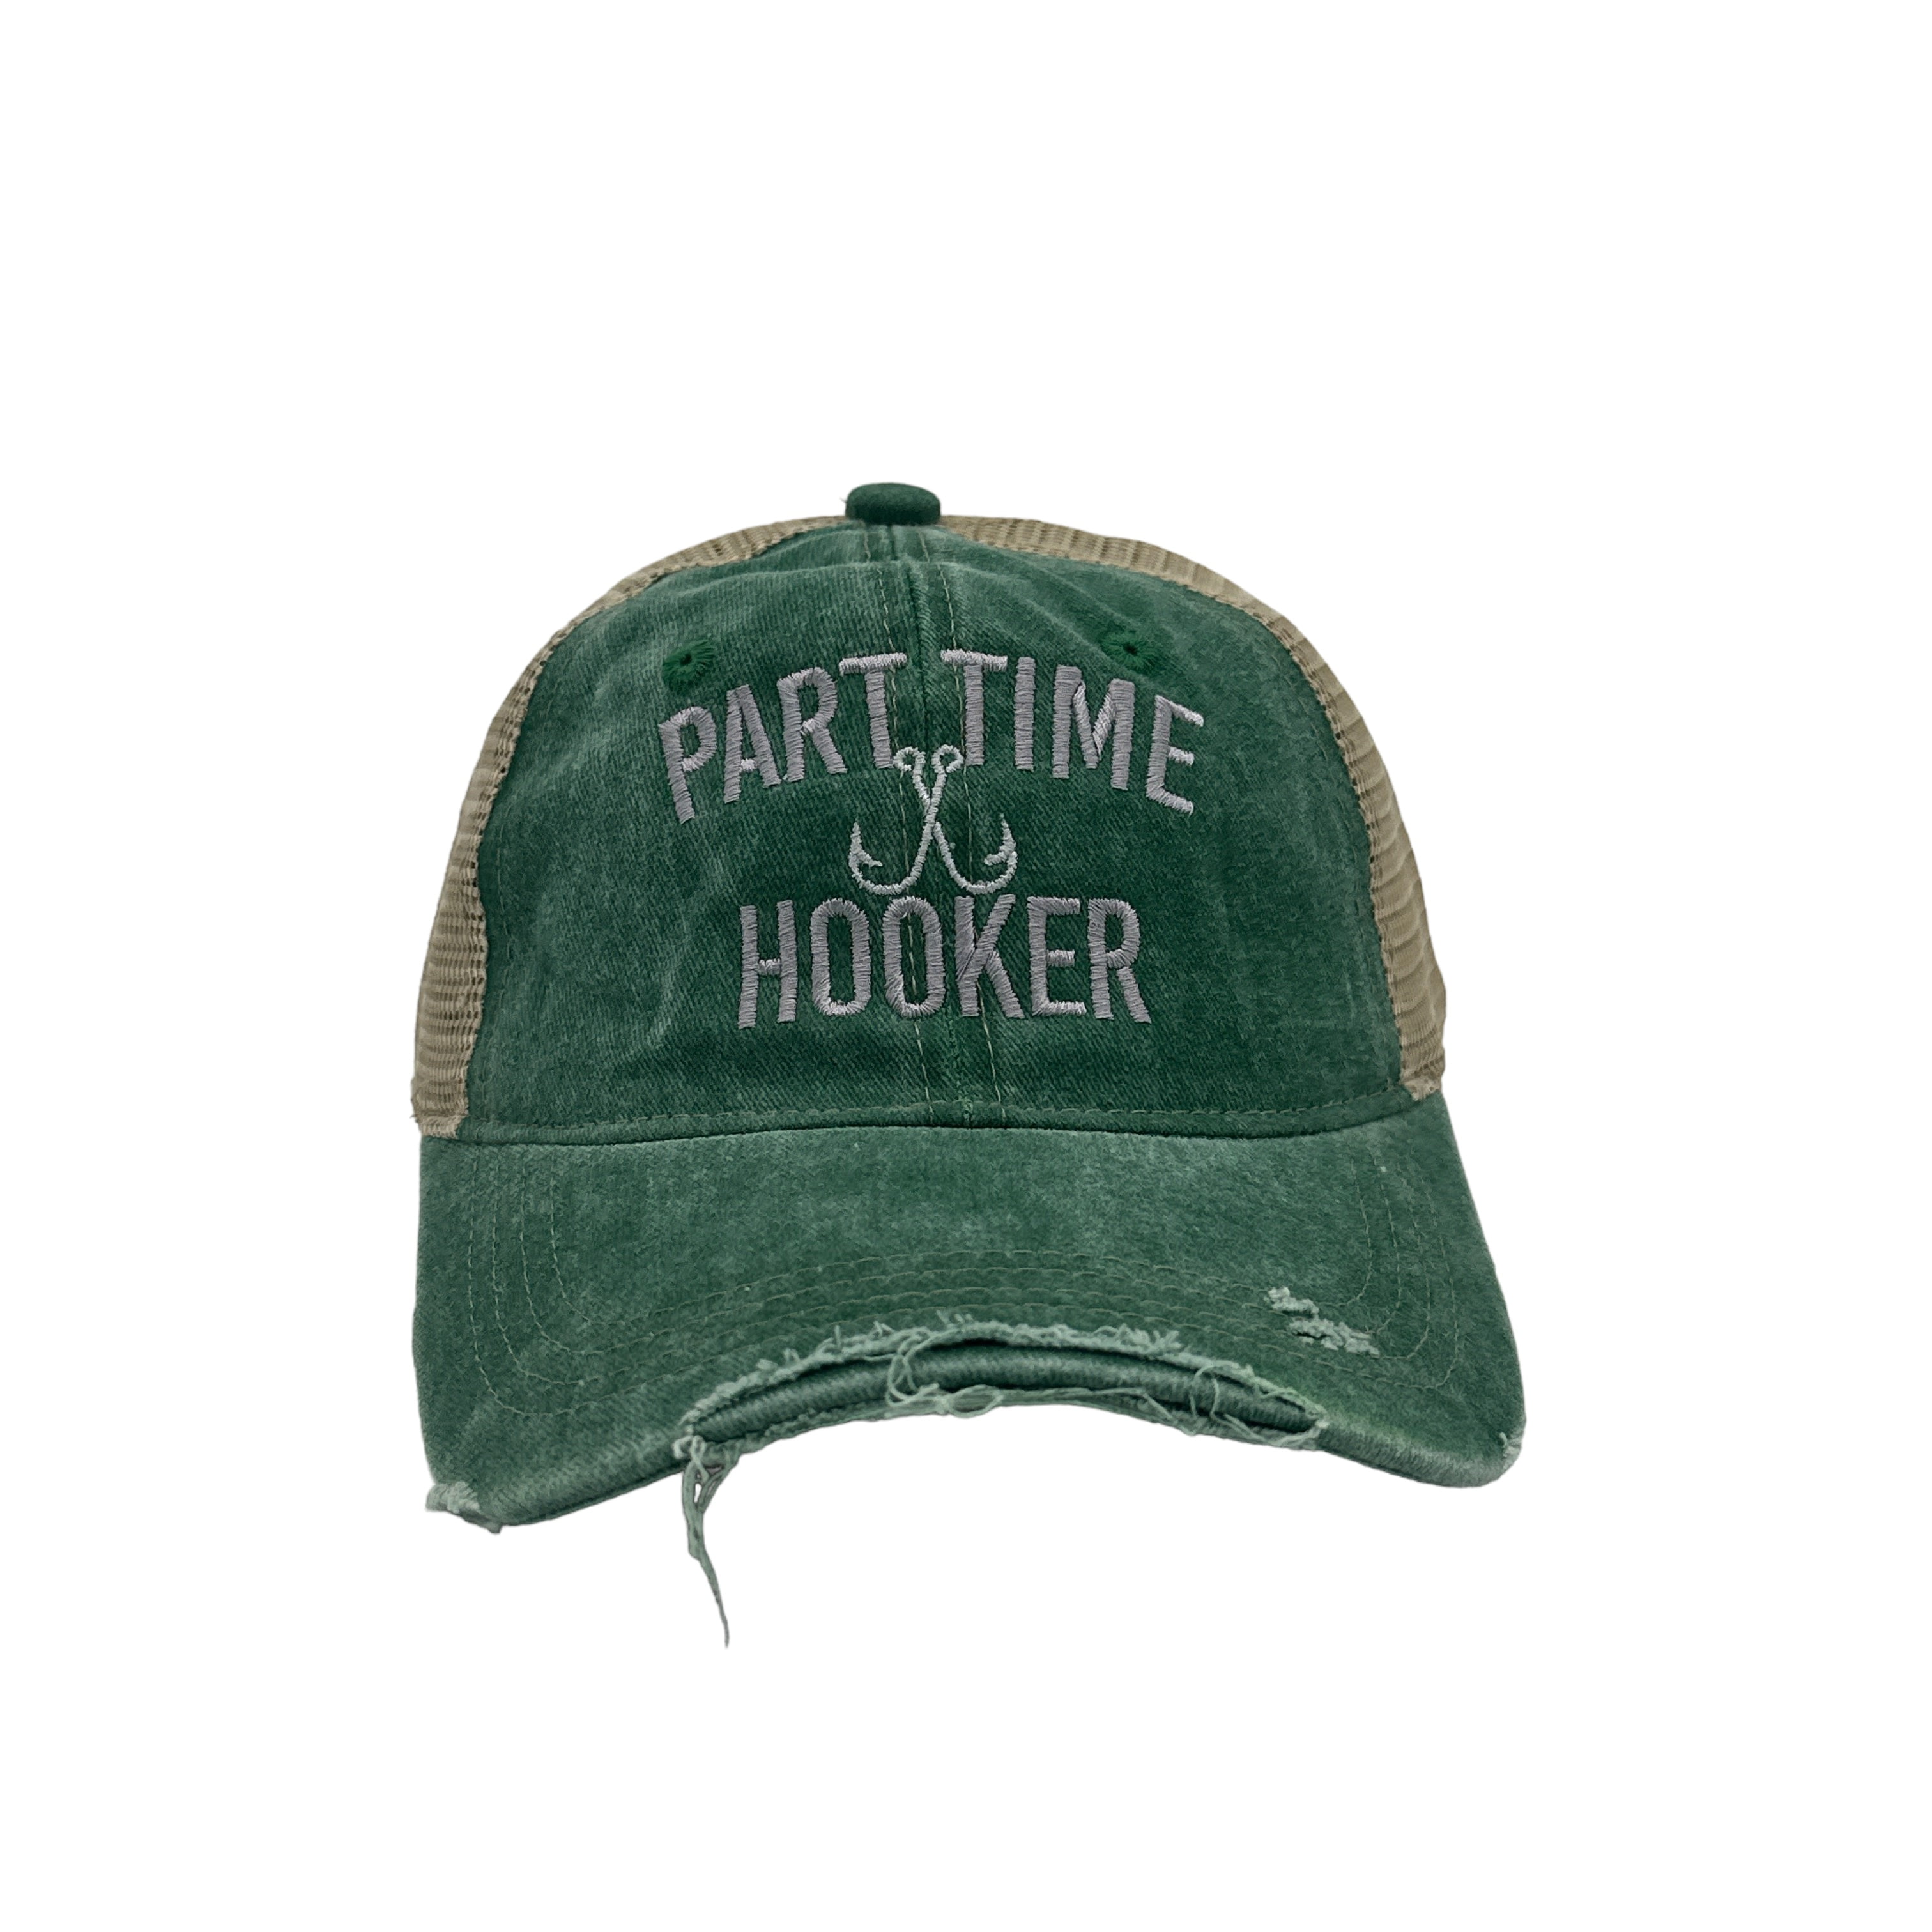 Part Time Hooker Hat Funny Fishing Hook Joke Cap 